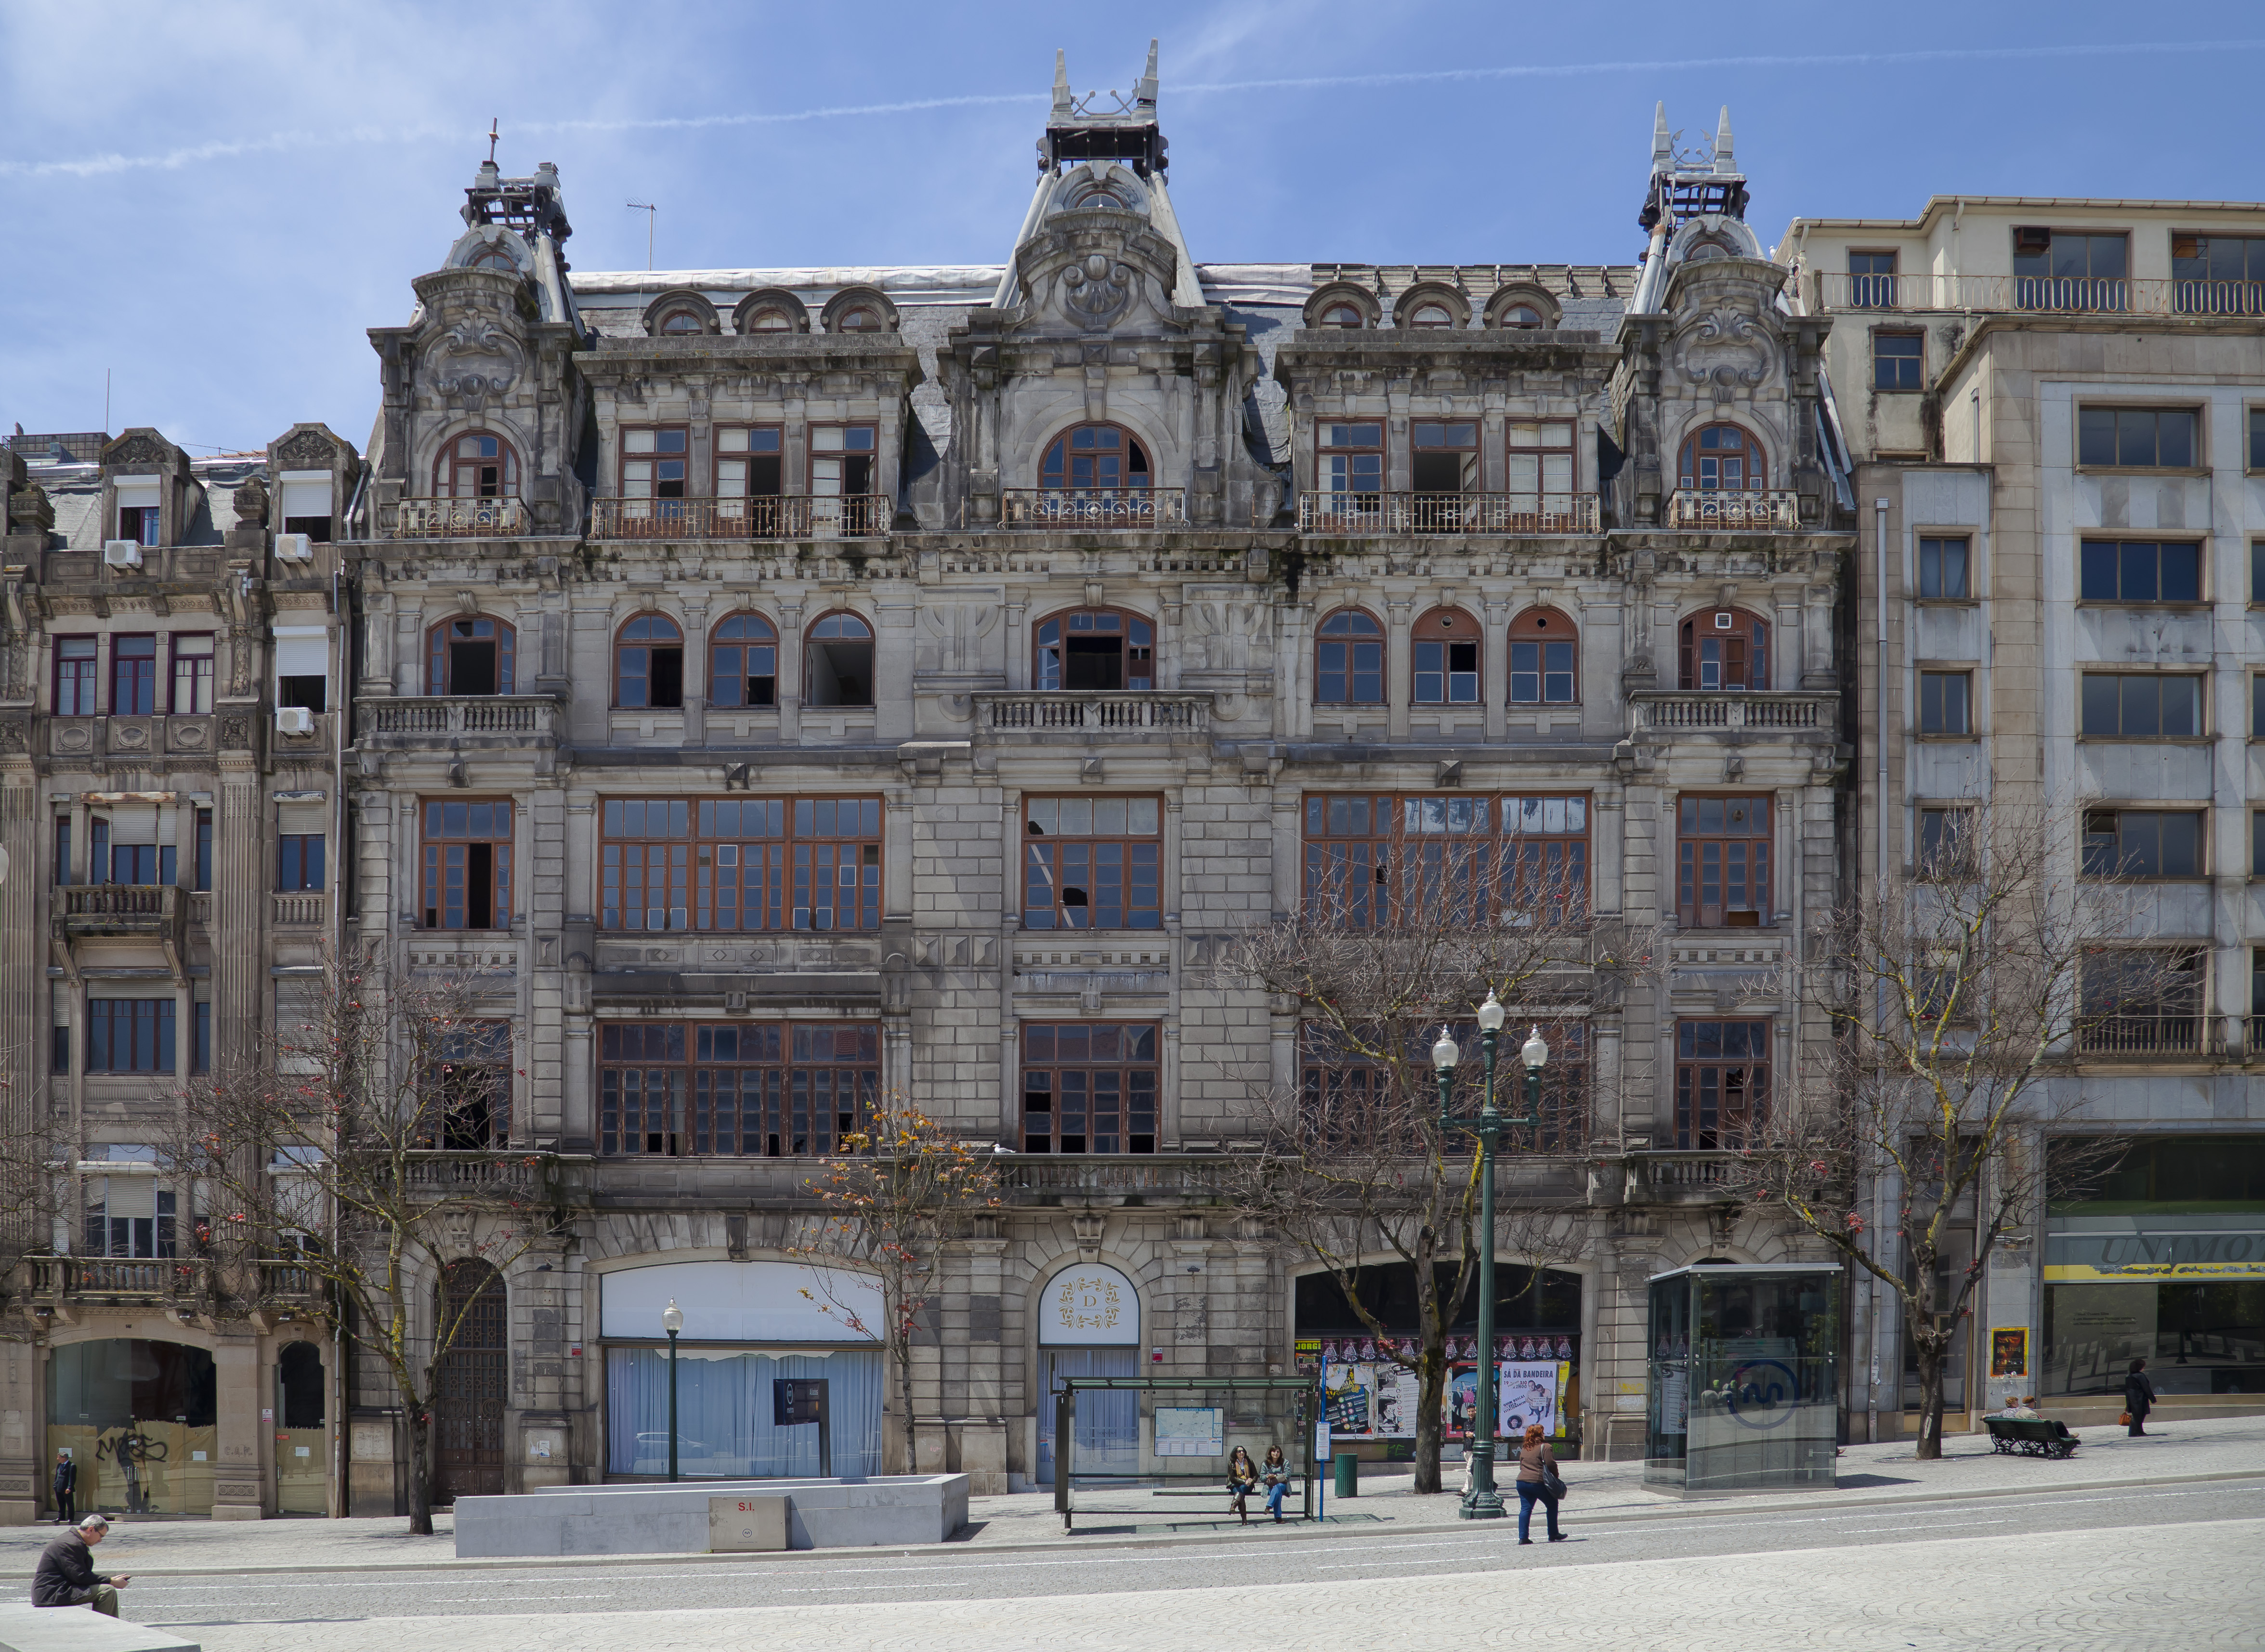 Edificio en Avenida dos Aliados, Oporto, Portugal, 2012-05-09, DD 01